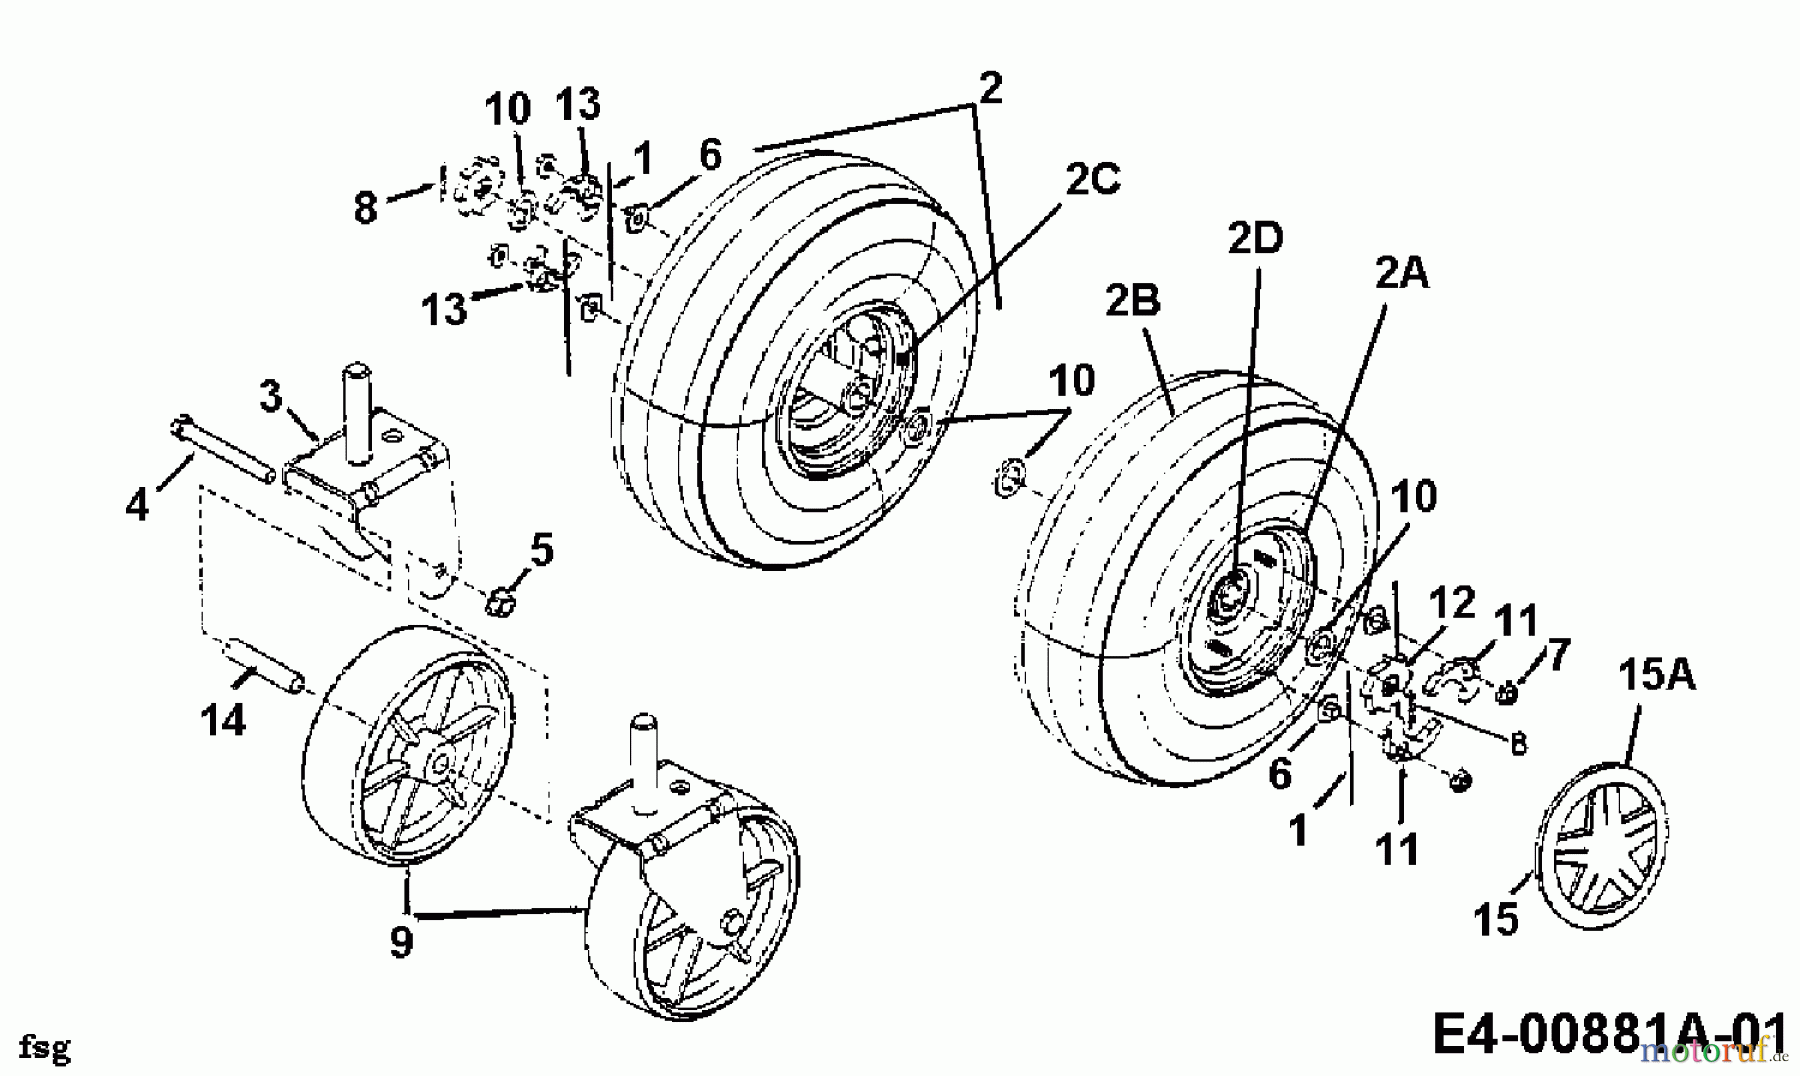  Gutbrod Leaf blower, Blower vac 202 24A-202B604  (1998) Wheels